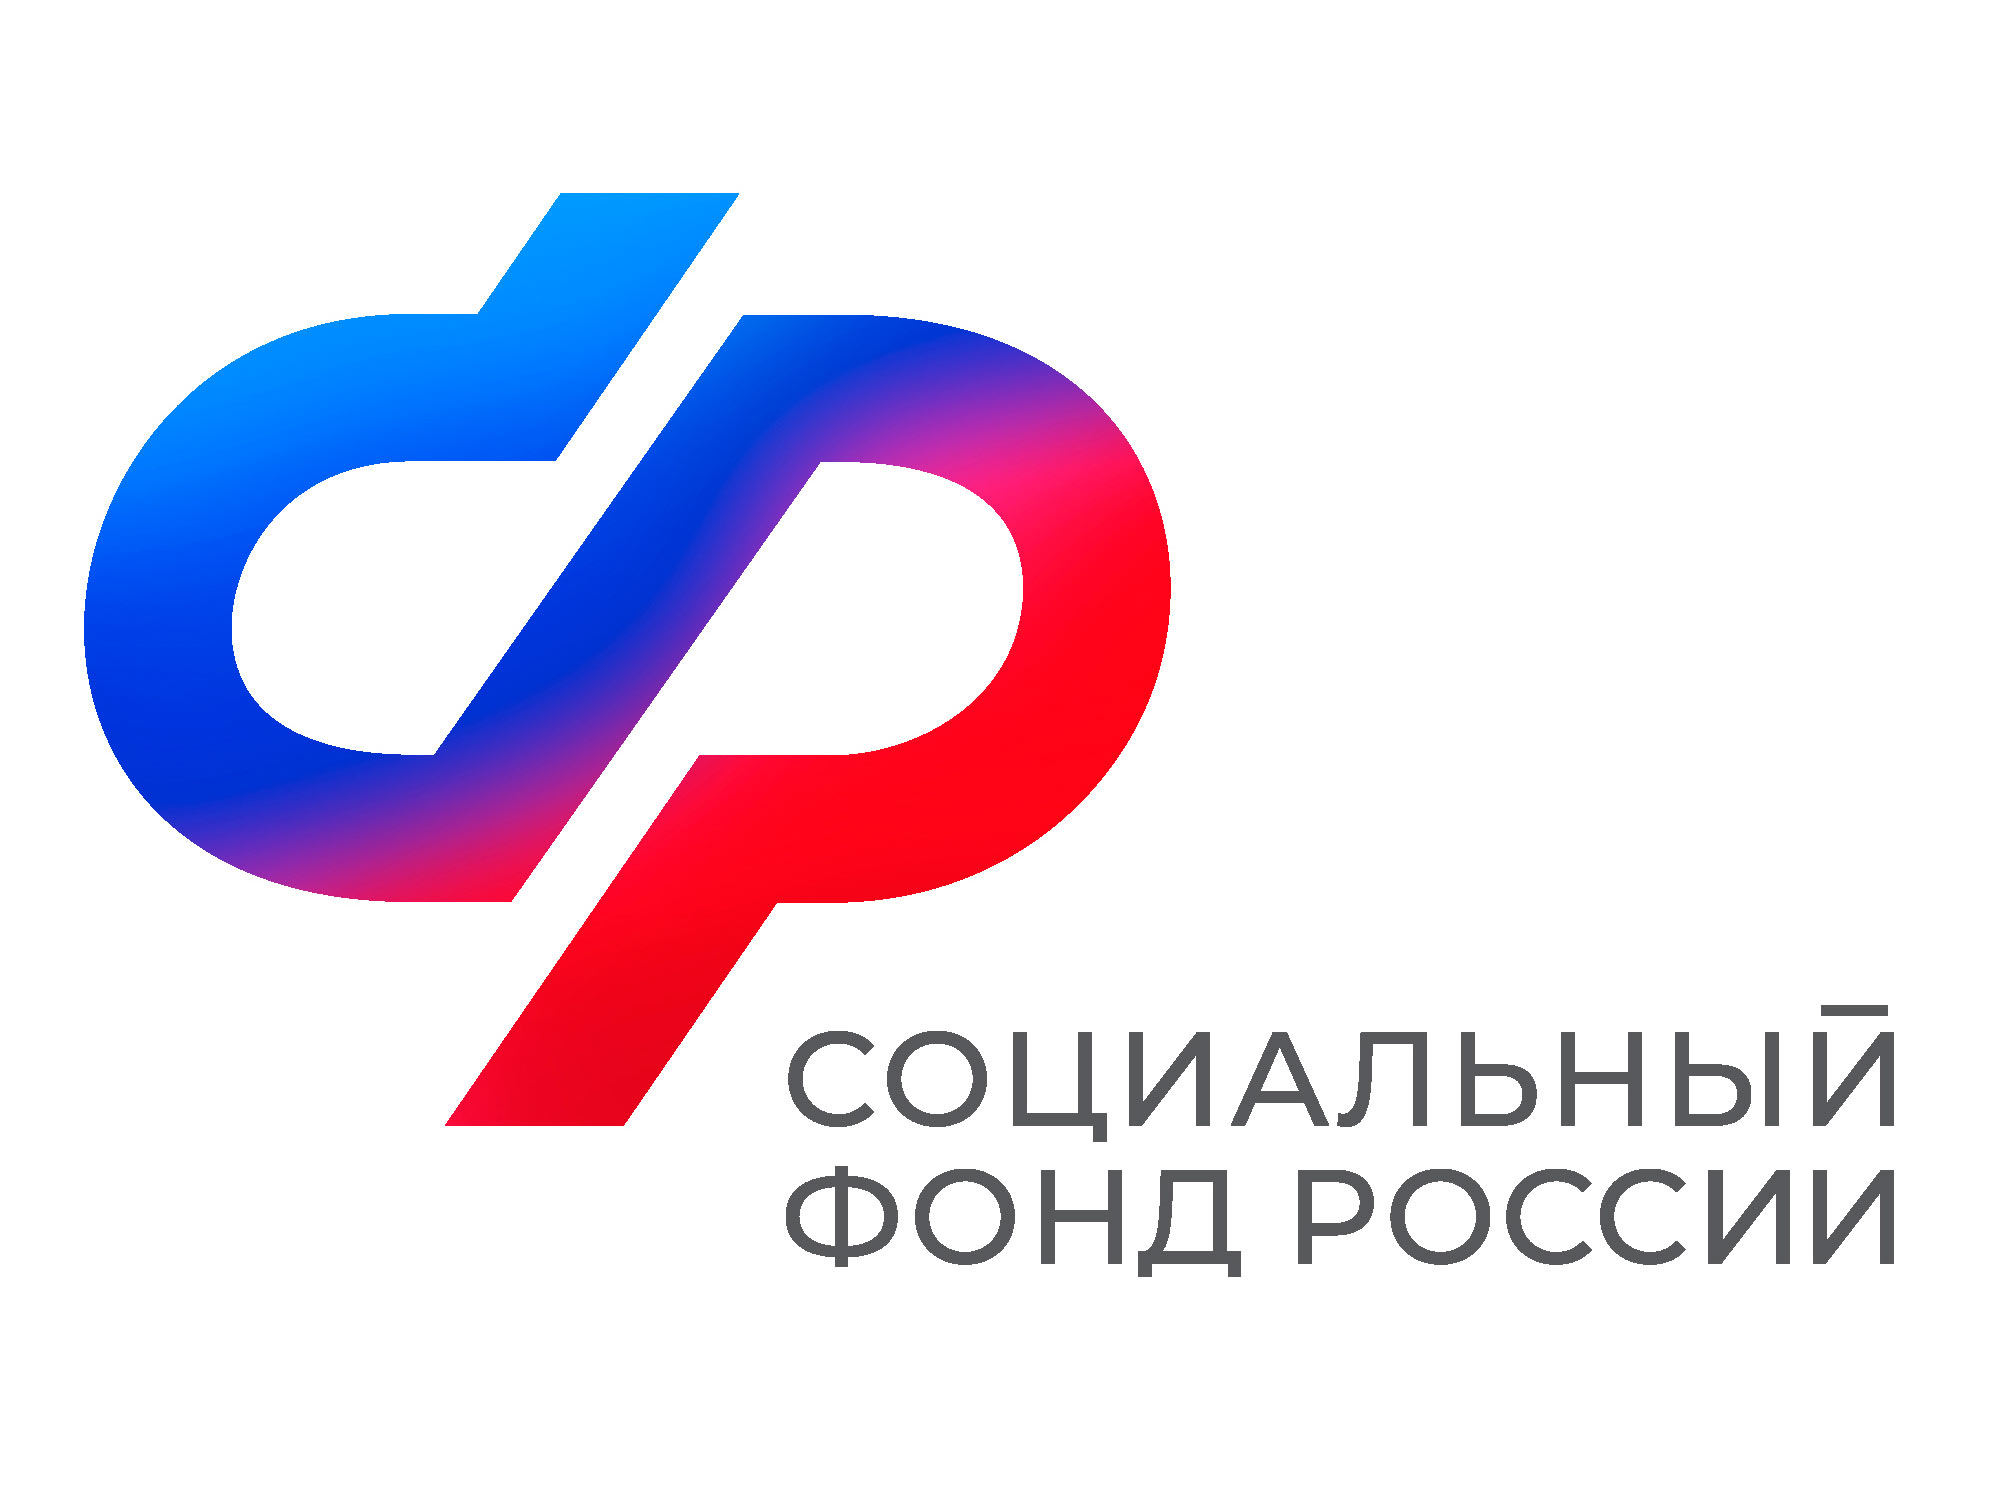 До конца декабря жители Ульяновской области могут изменить решение о переводе накоплений в другой фонд .